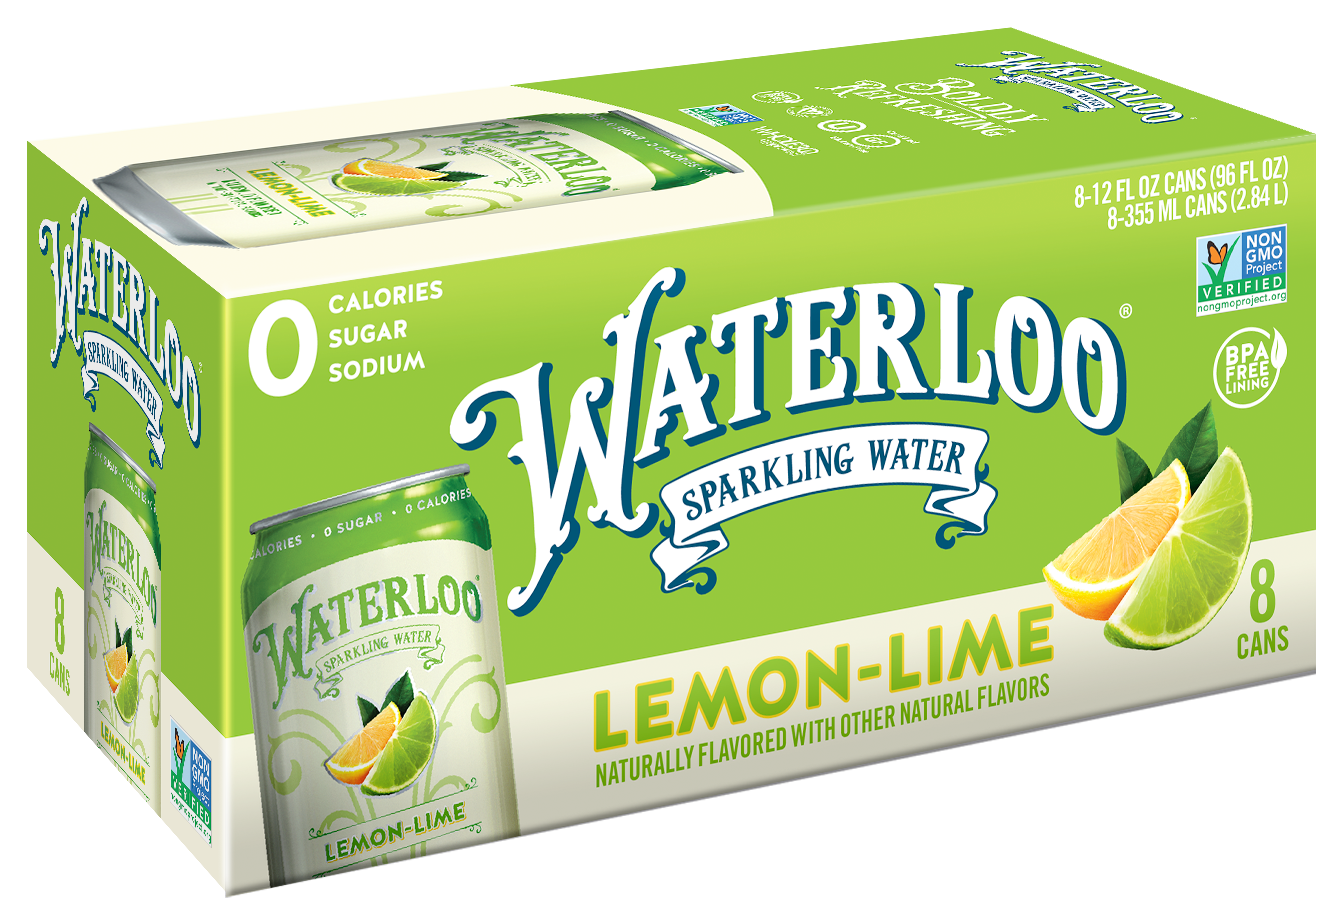 Waterloo Lemon-Lime Sparkling Water 3 innerpacks per case 96.0 fl